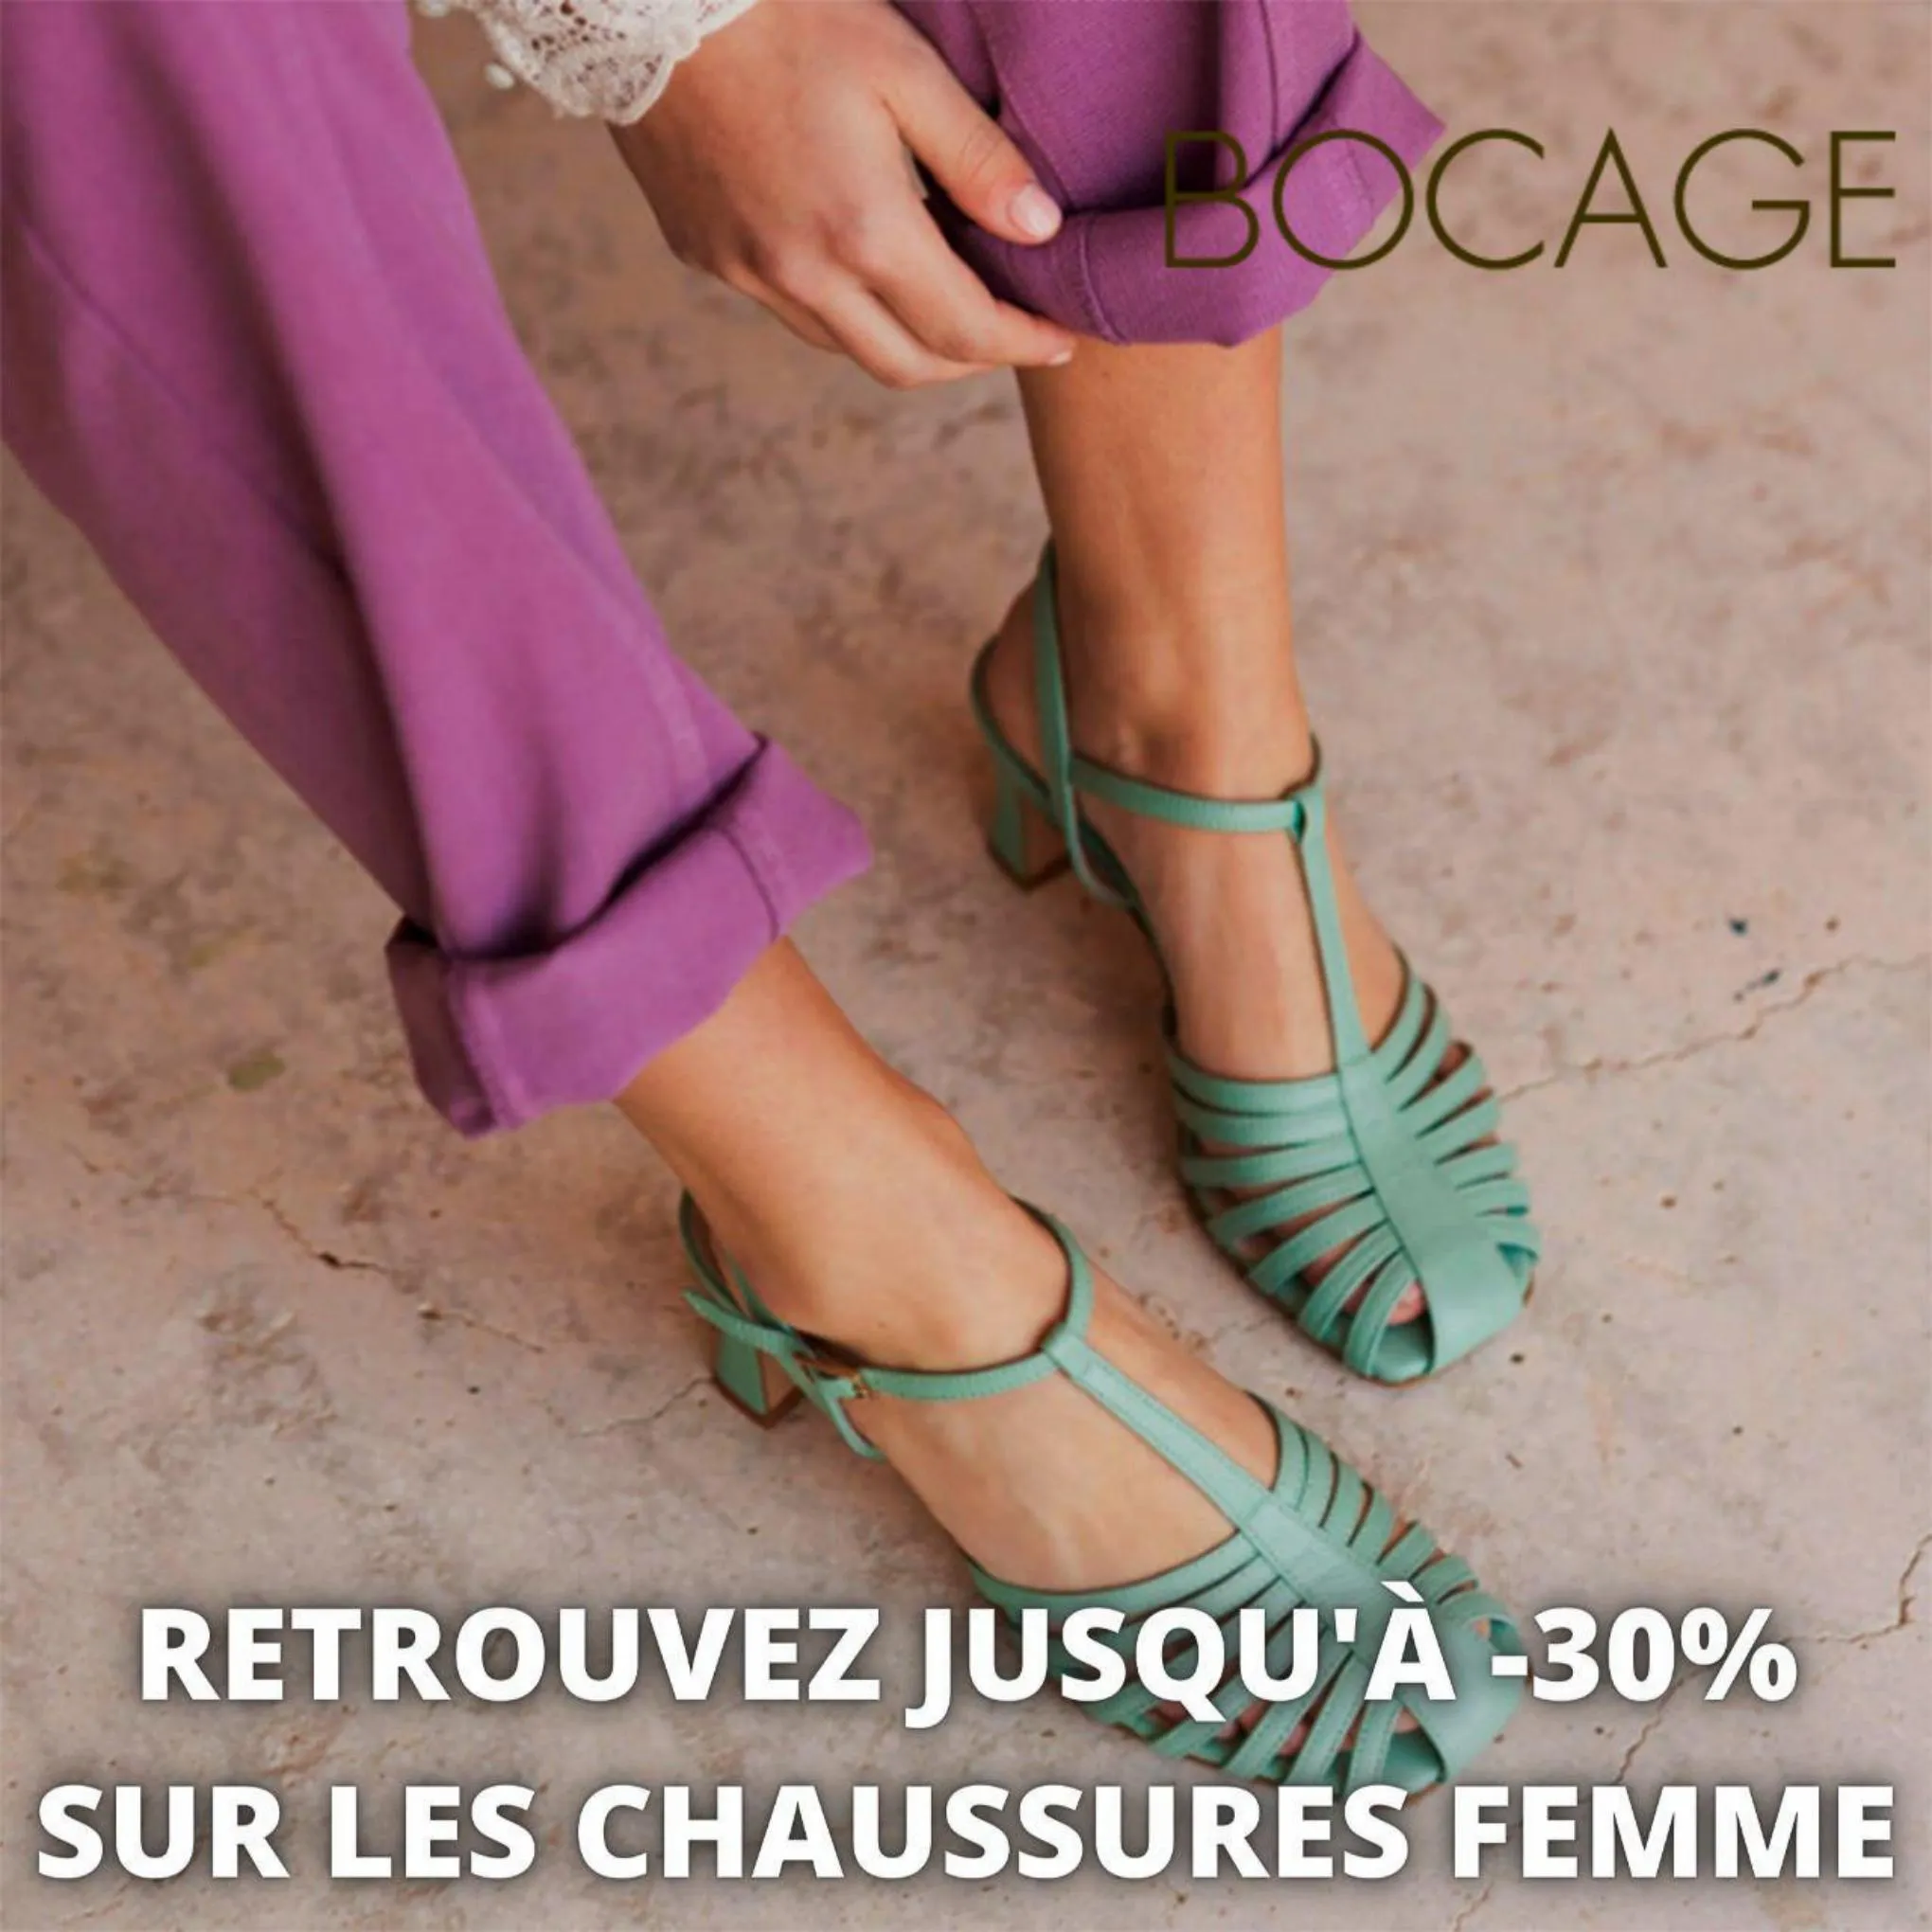 Catalogue Retrouvez jusqu'à -30% sur les chaussures femme, page 00001